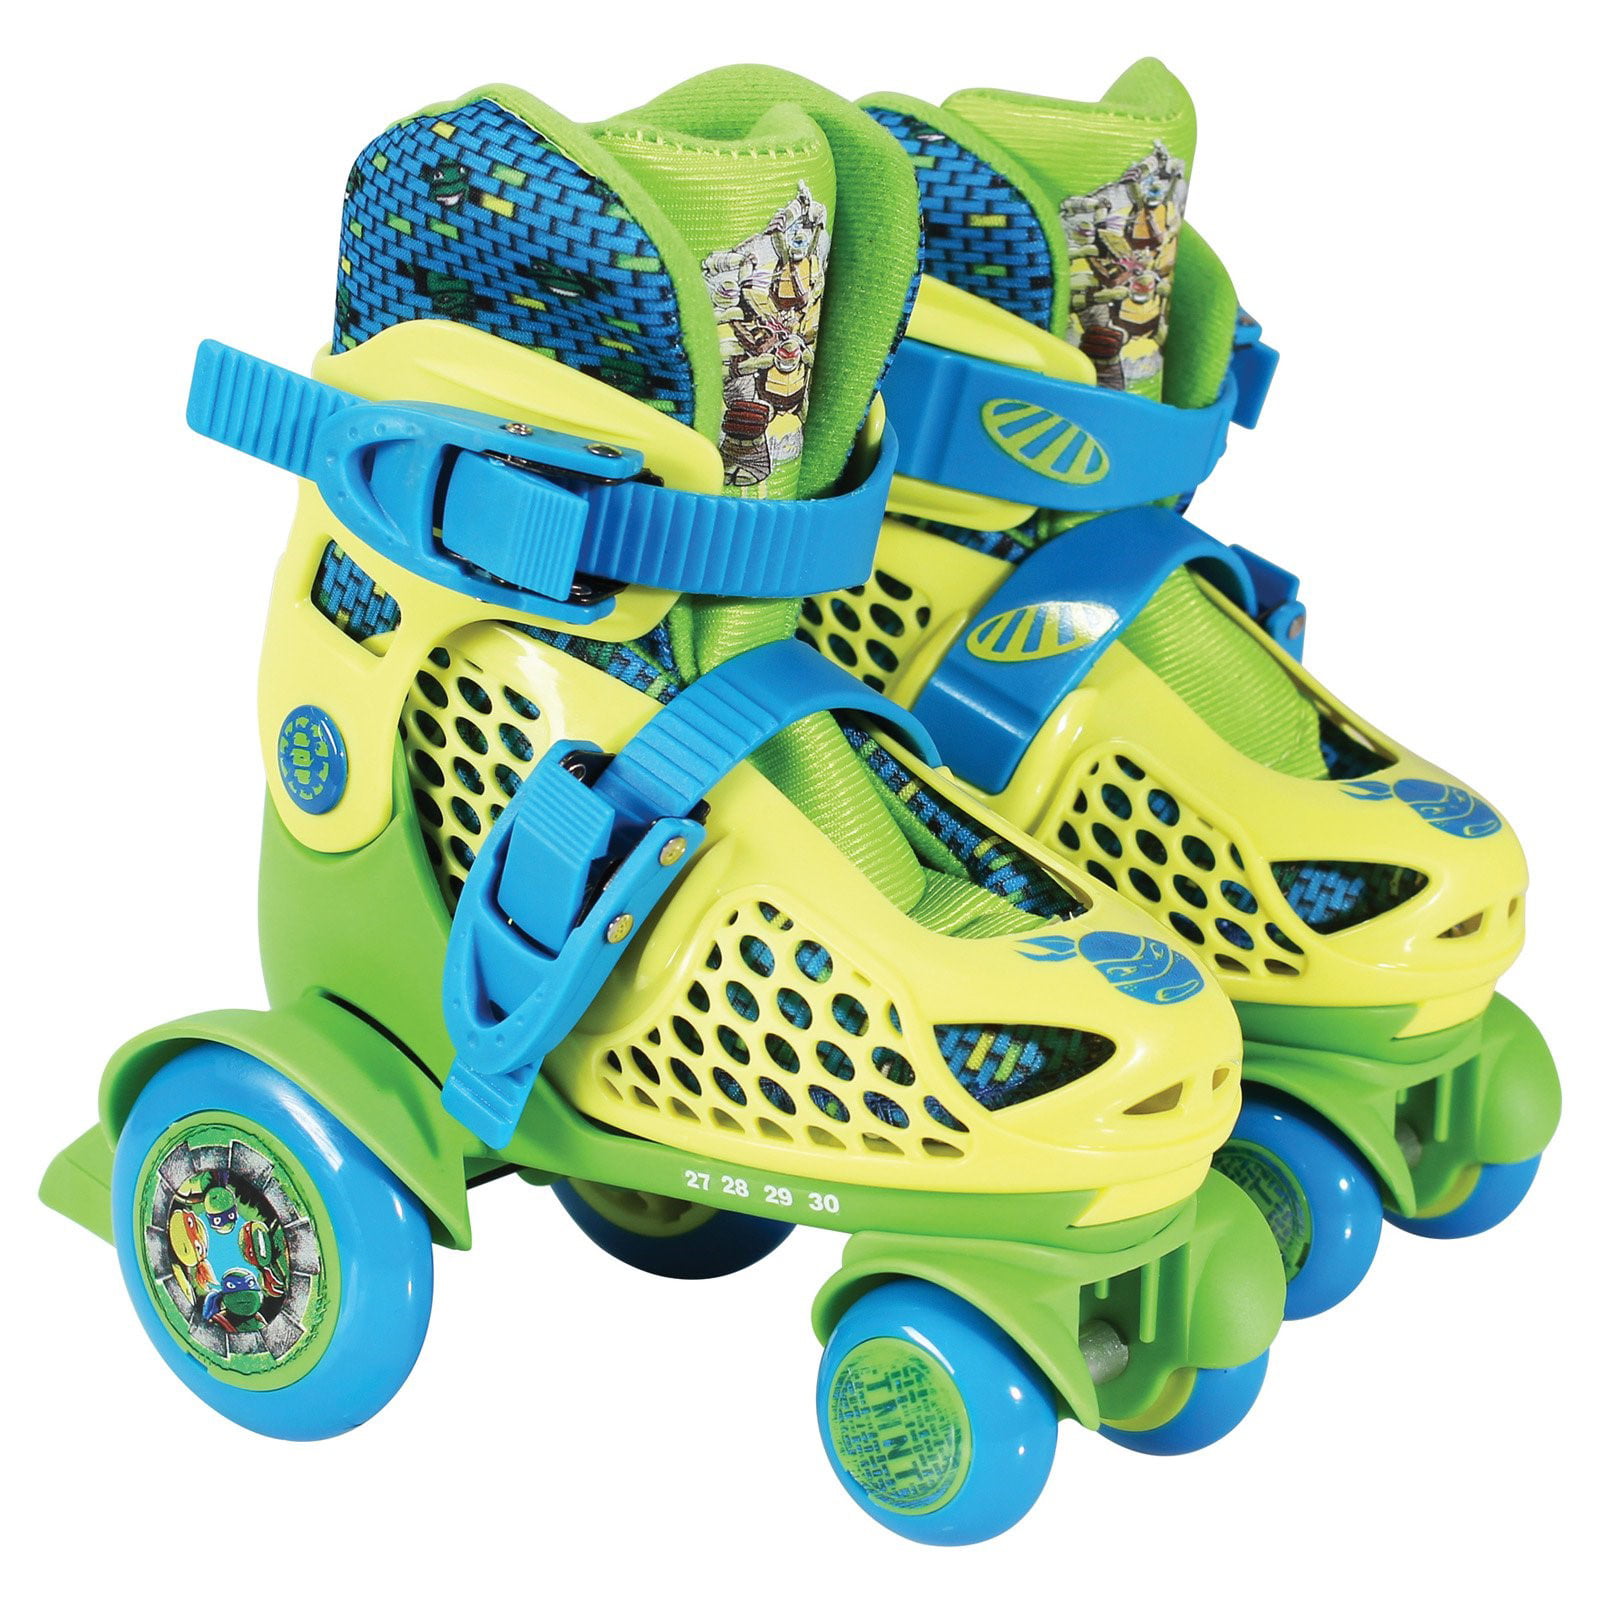 PlayWheels Teenage Mutant Ninja Turtles Kids Big Wheel Quad Roller Skates Junior Size 6-9